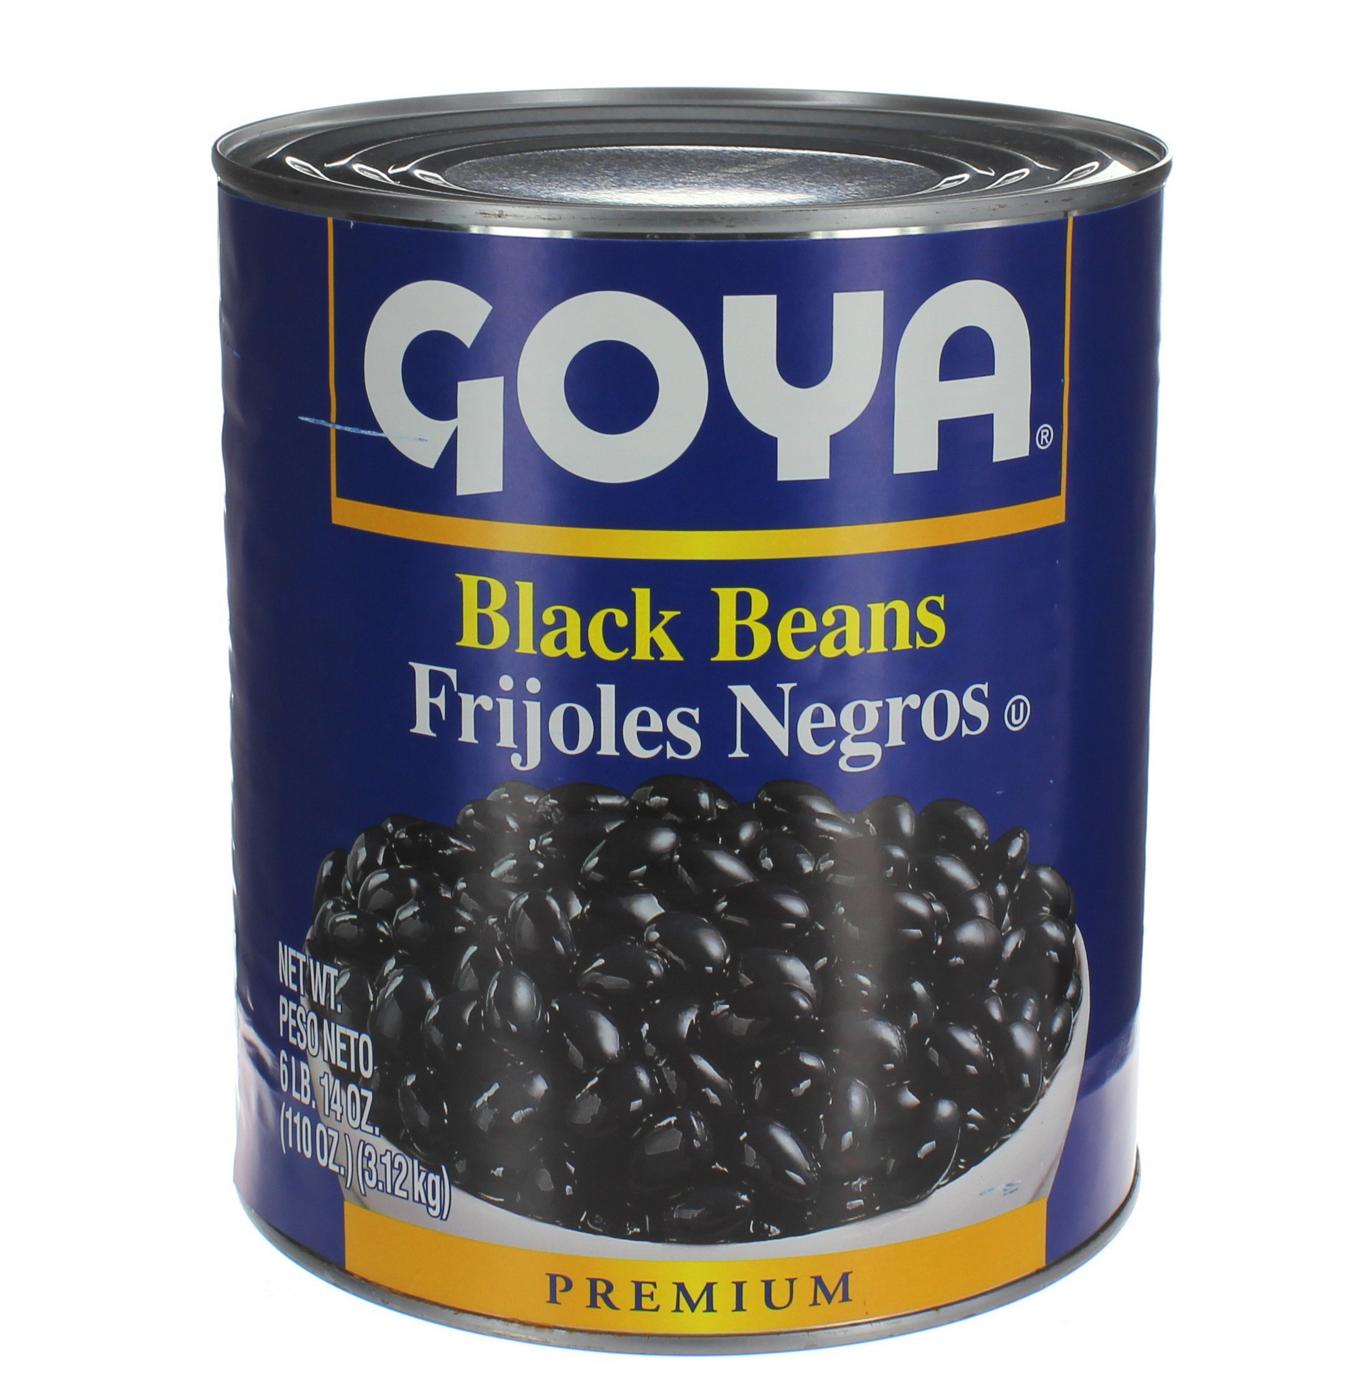 Goya Frijoles Negros (Black Beans); image 1 of 2